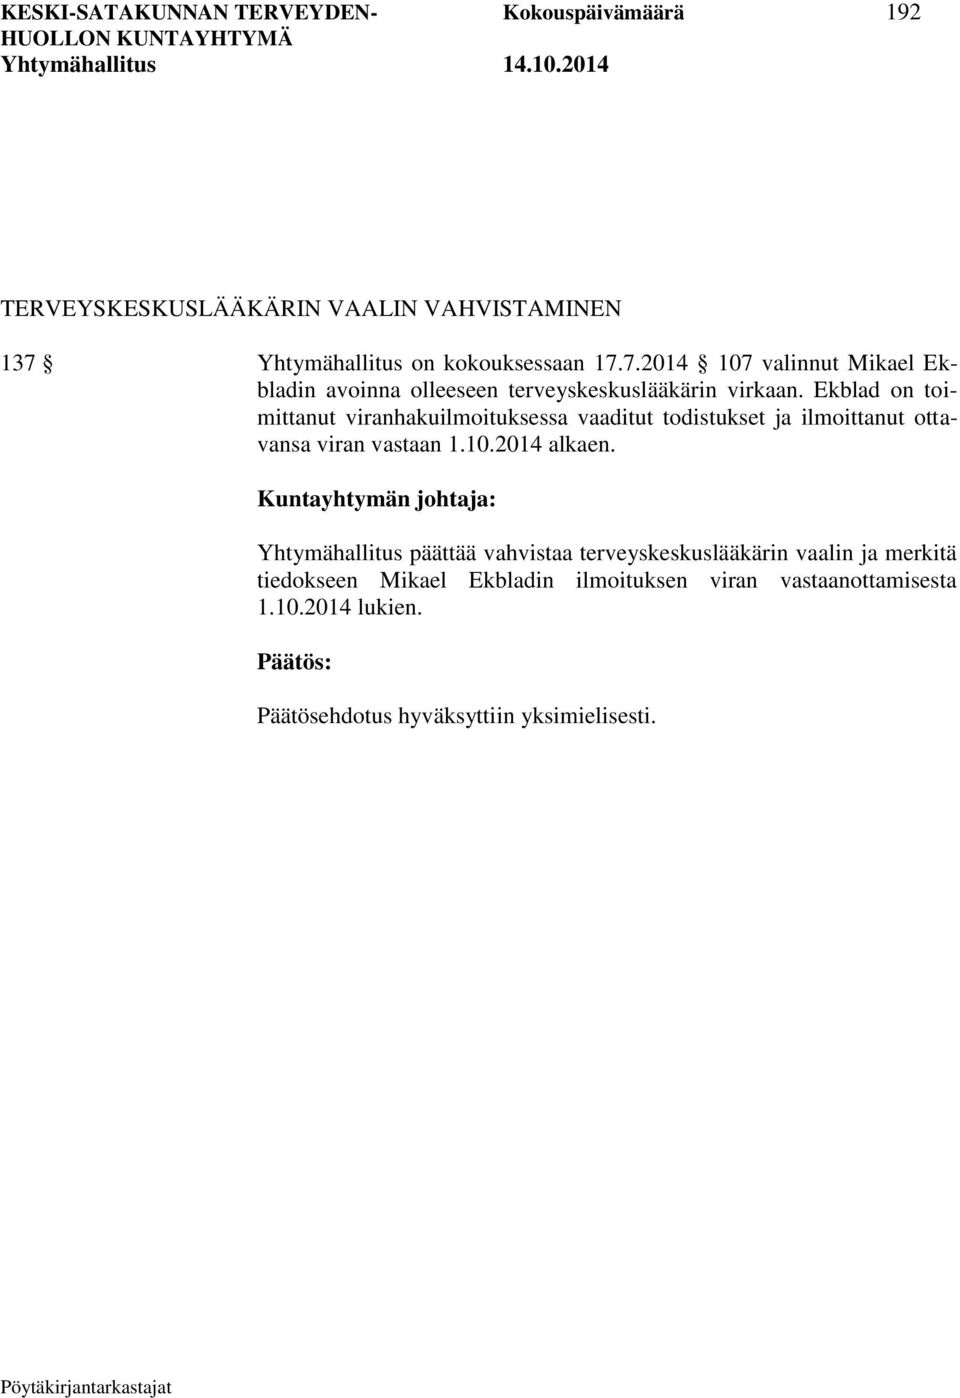 Ekblad on toimittanut viranhakuilmoituksessa vaaditut todistukset ja ilmoittanut ottavansa viran vastaan 1.10.2014 alkaen.